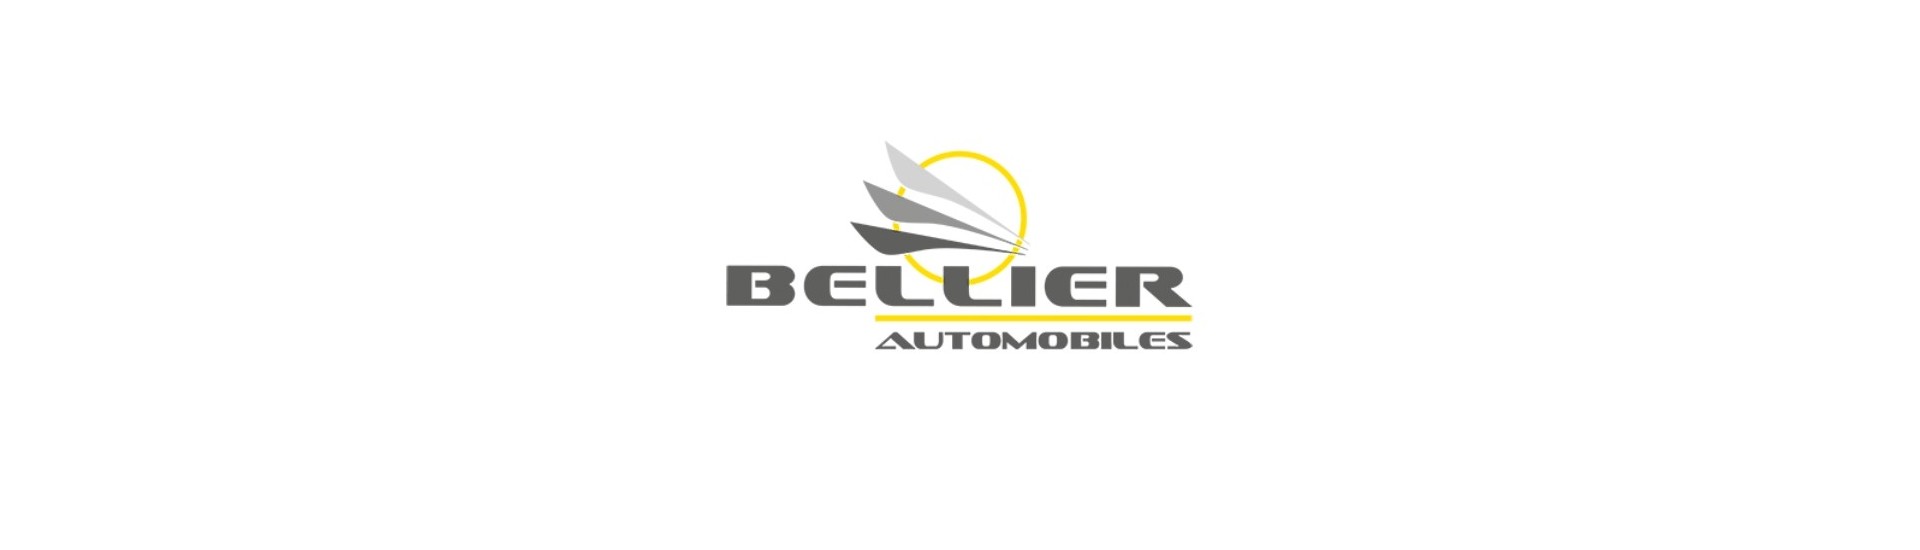 Luftriktare till bästa pris för bilar utan körkort Bellier